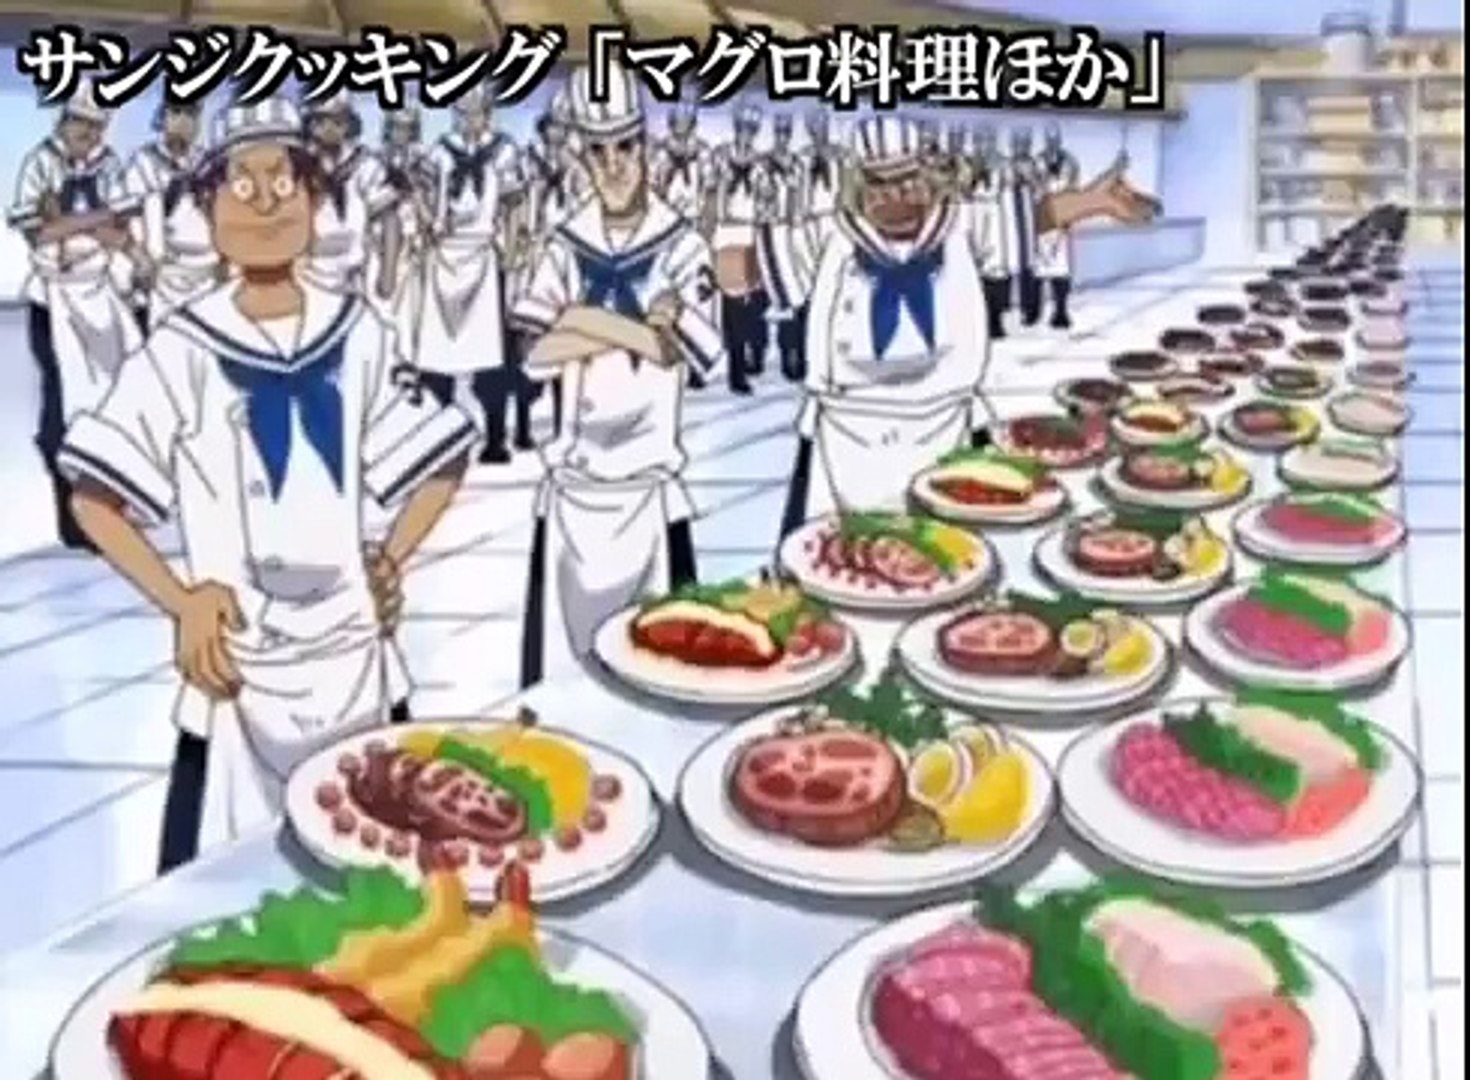 マグロ料理ほか サンジクッキング ワンピース One Piece 飯テロアニメ食事シーン Japanese Tv Anime Eat Food Dailymotion Video